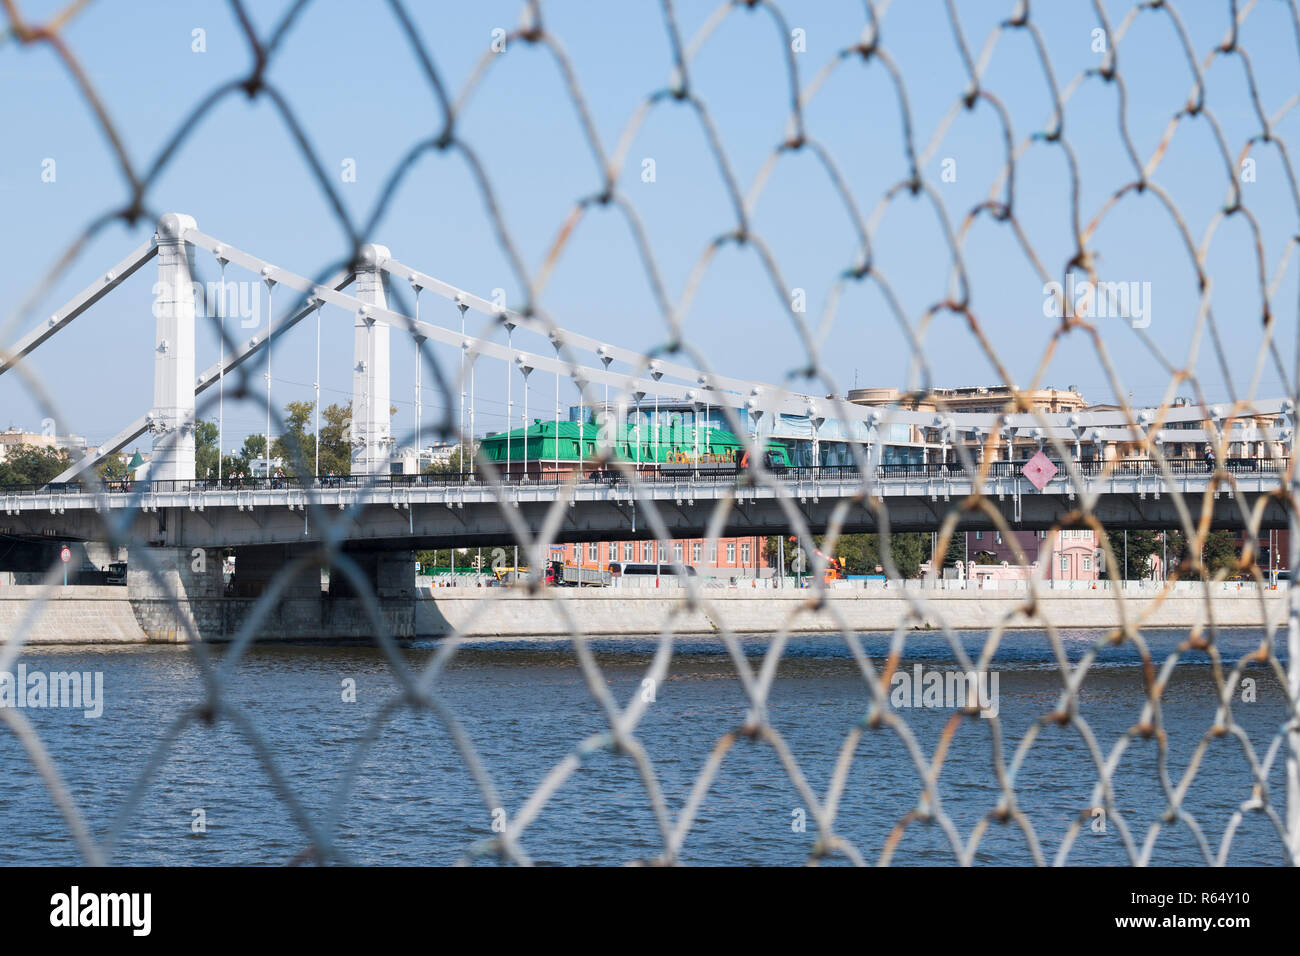 Landschaft einer Hängebrücke über den Fluss Moskwa. Eine Ansicht von hinter dem Gitter (rabitz). Das Konzept der Einschränkung der Freizügigkeit. Stockfoto